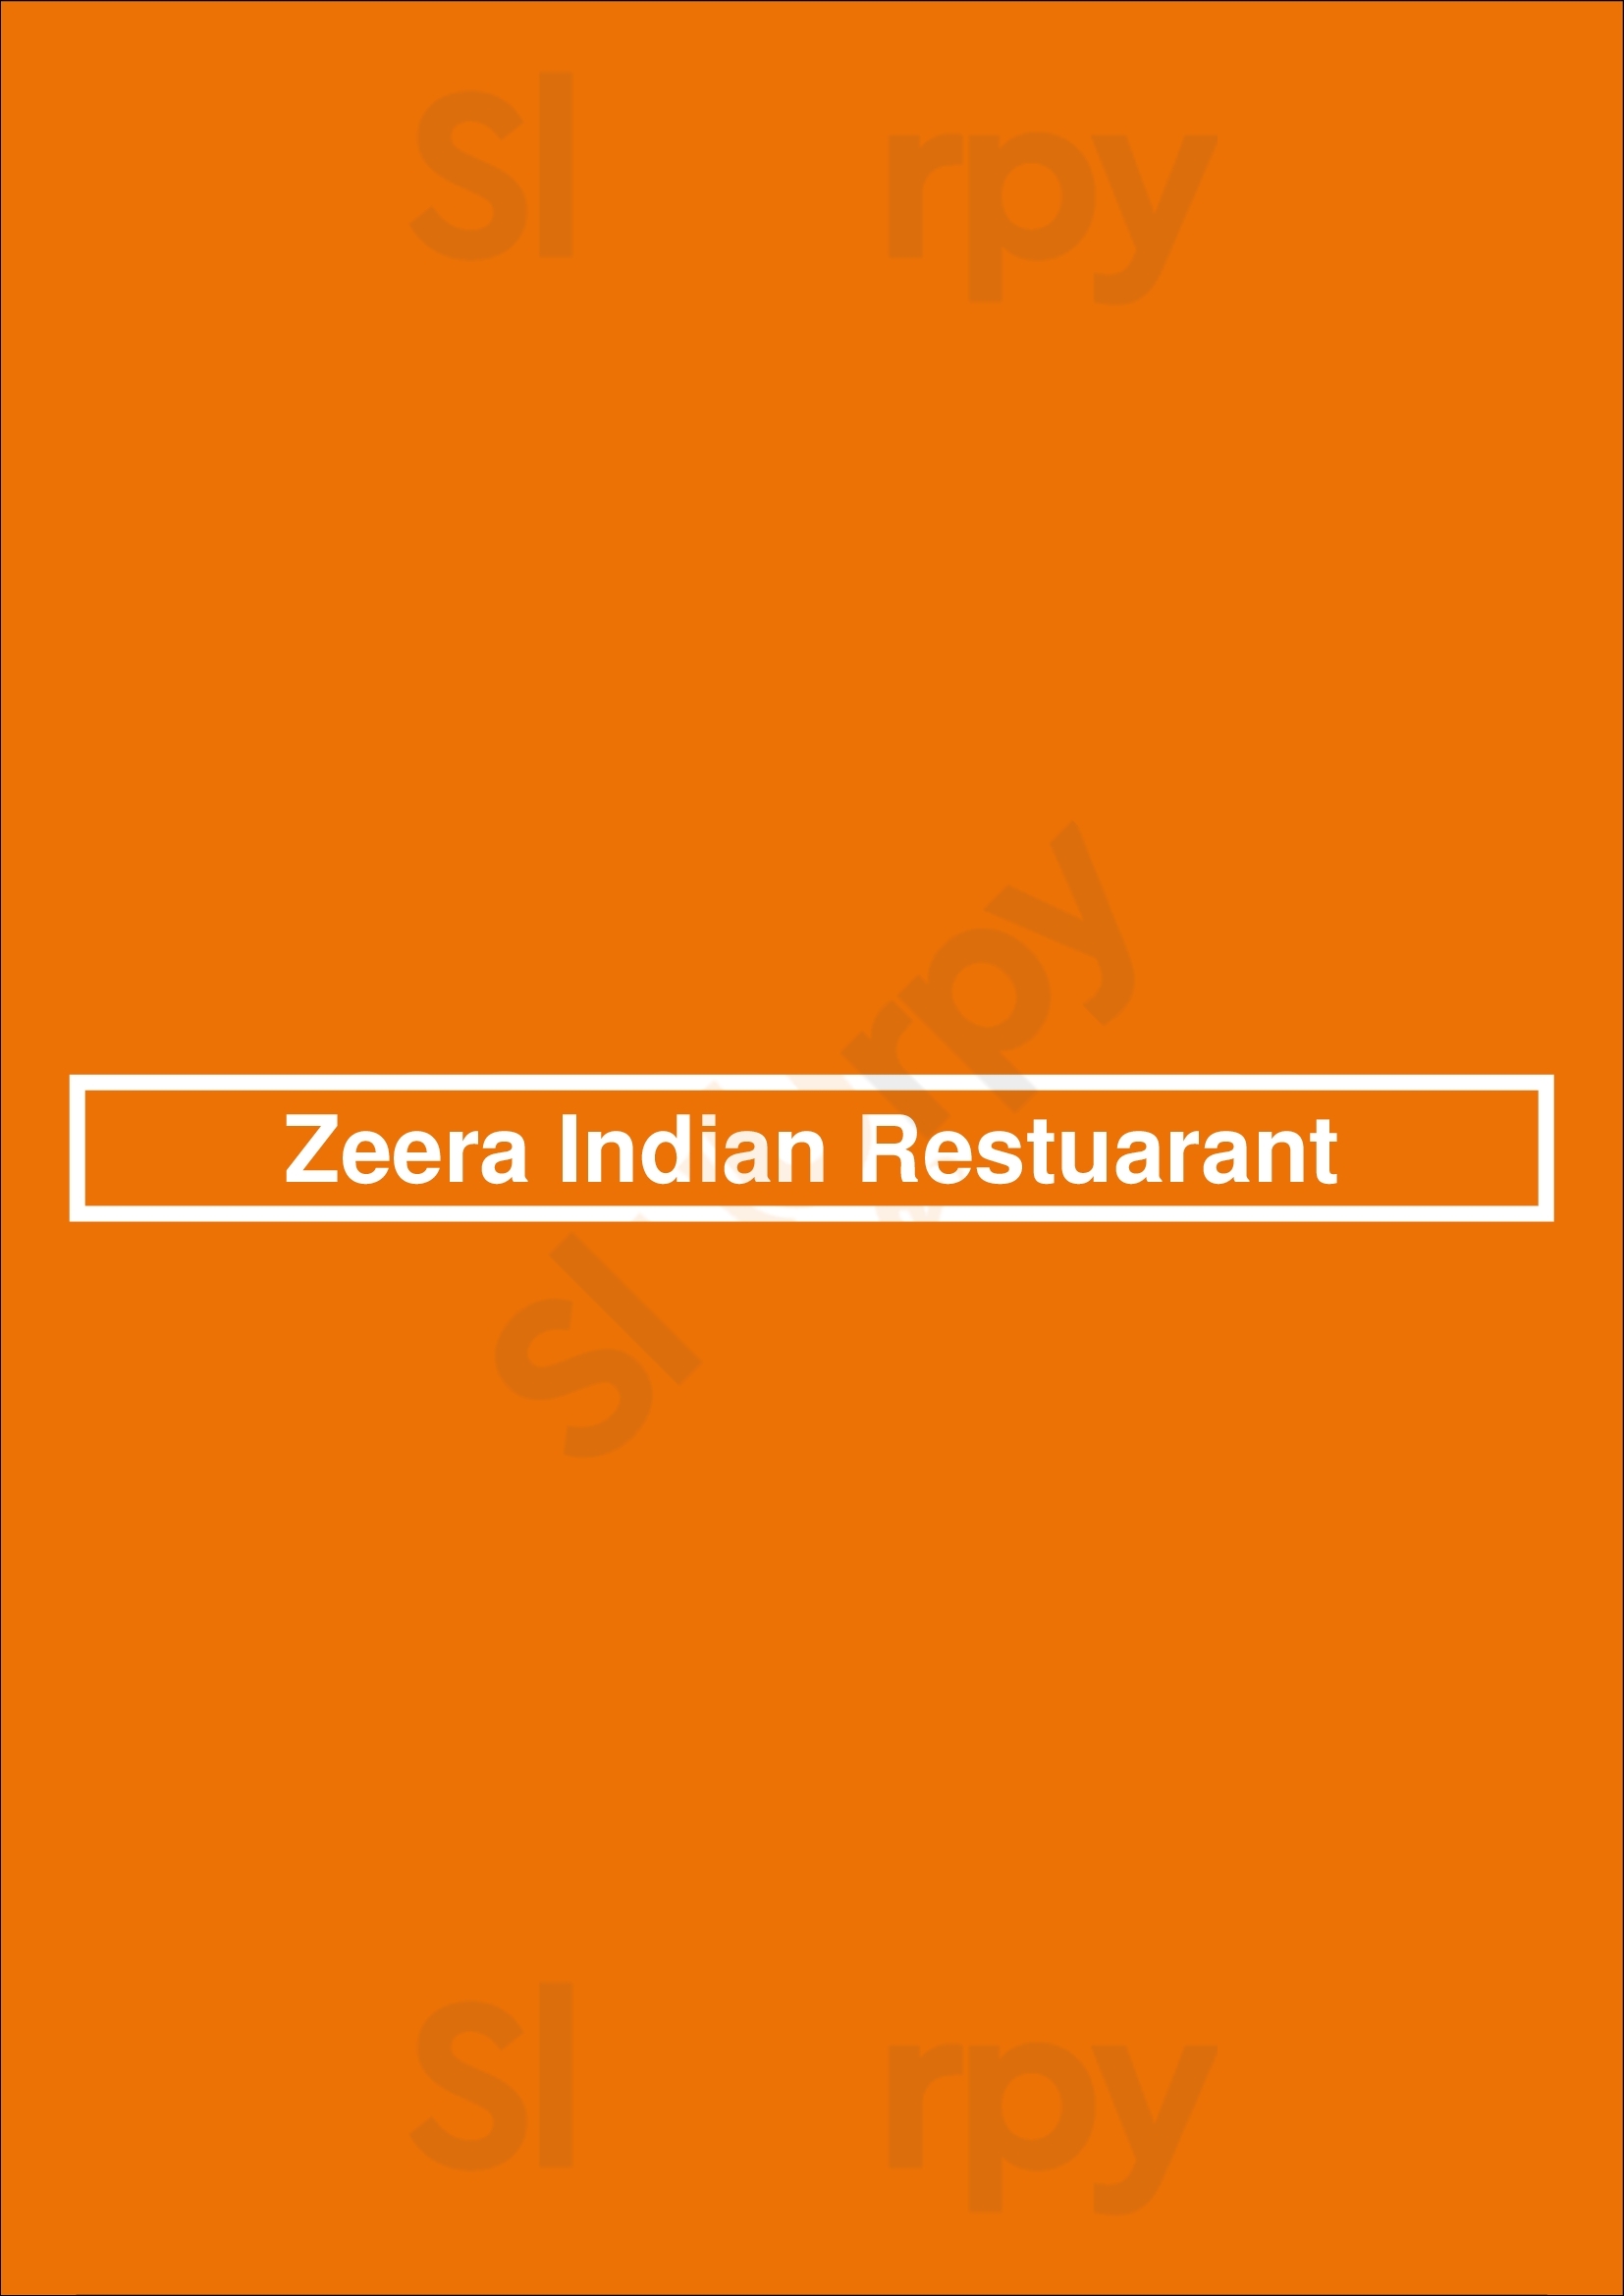 Zeera Indian Restuarant Fuquay-Varina Menu - 1